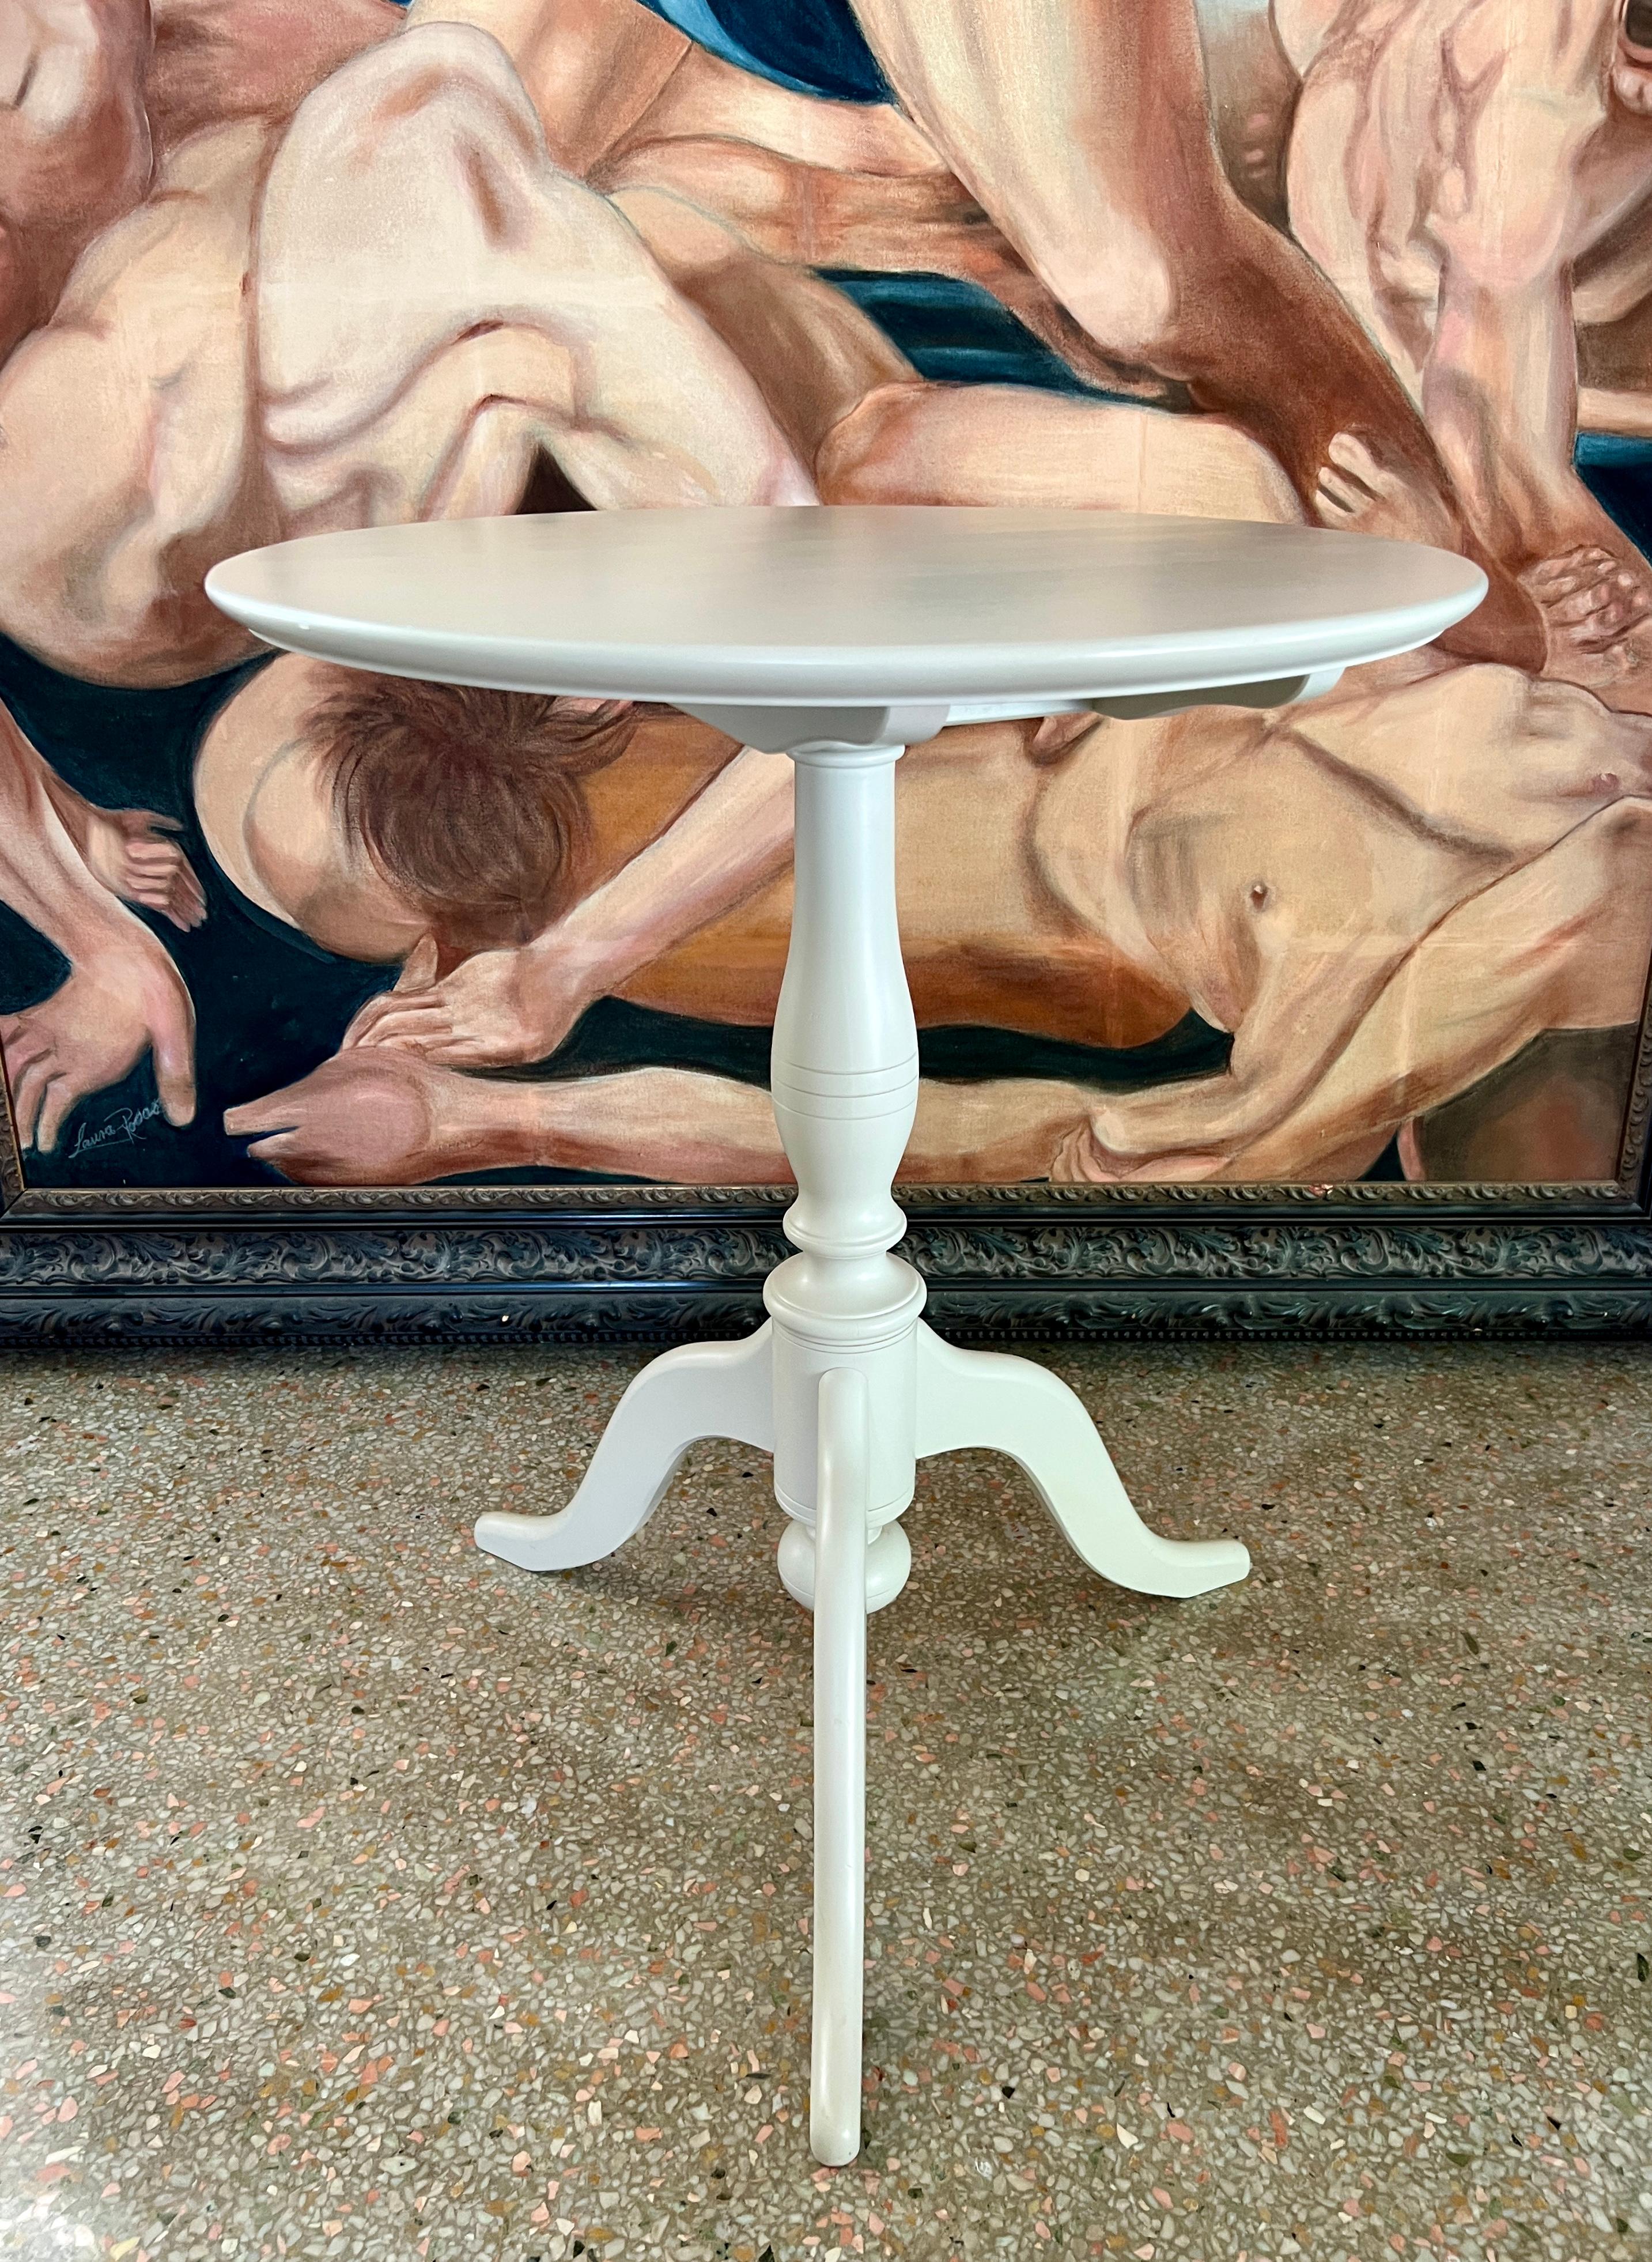 Table de style gustavien inspirée des tables guéridon antiques de la Suède du XIXe siècle, avec plateau incliné. Le mécanisme d'inclinaison permet de faire pivoter complètement le plateau et de le bloquer latéralement lorsqu'il n'est pas utilisé. La